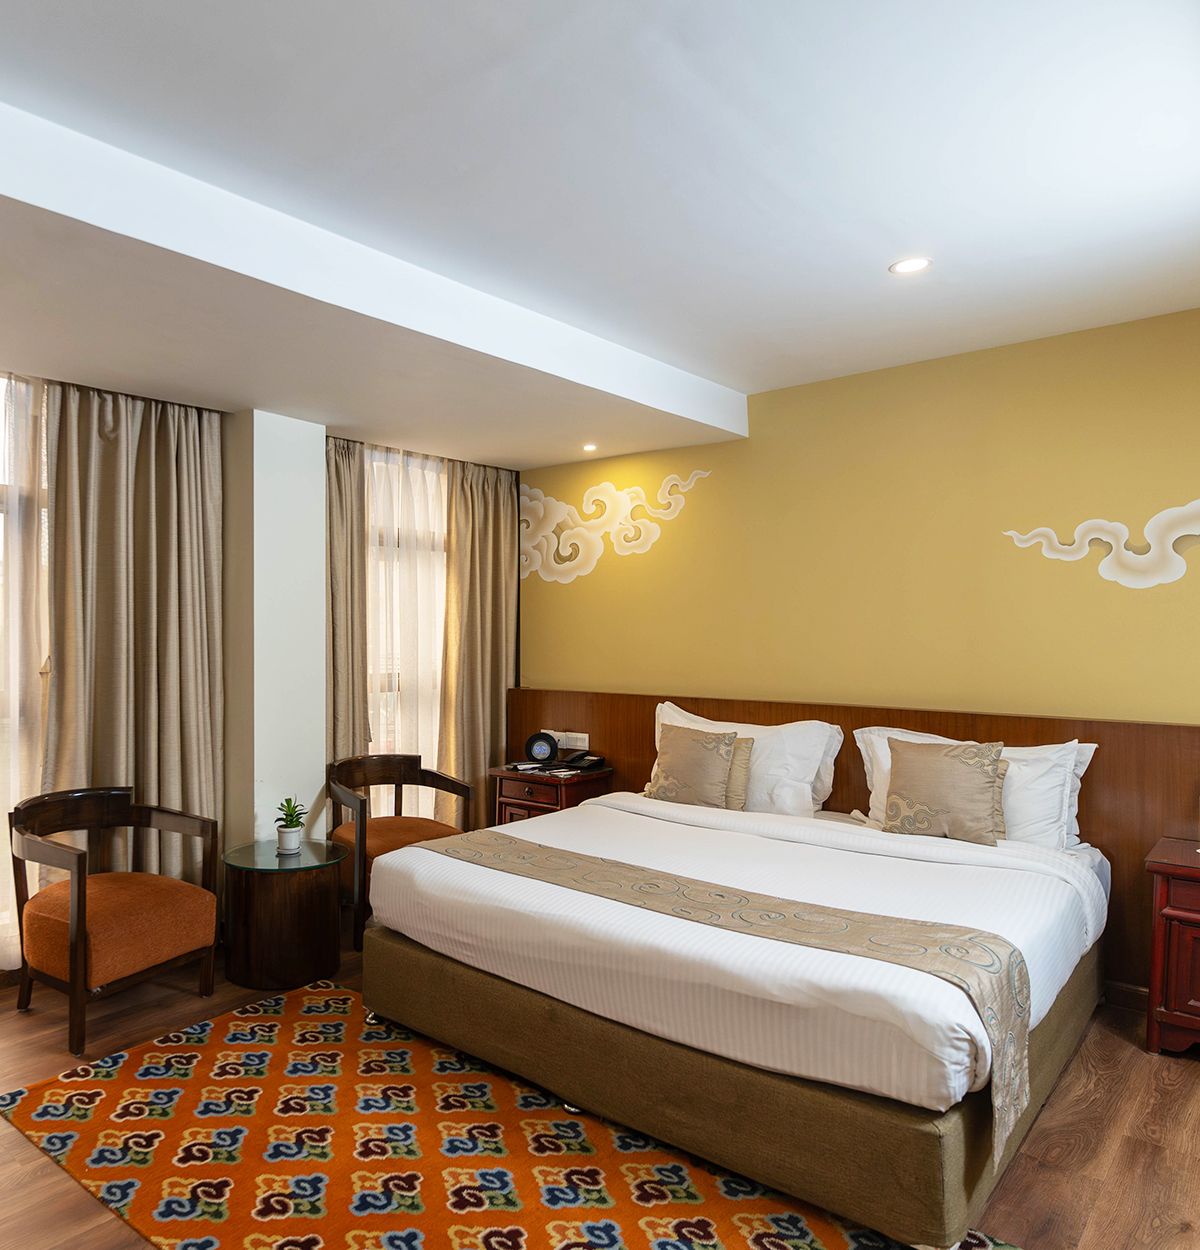 Wencheng suite at Hotel Shambala